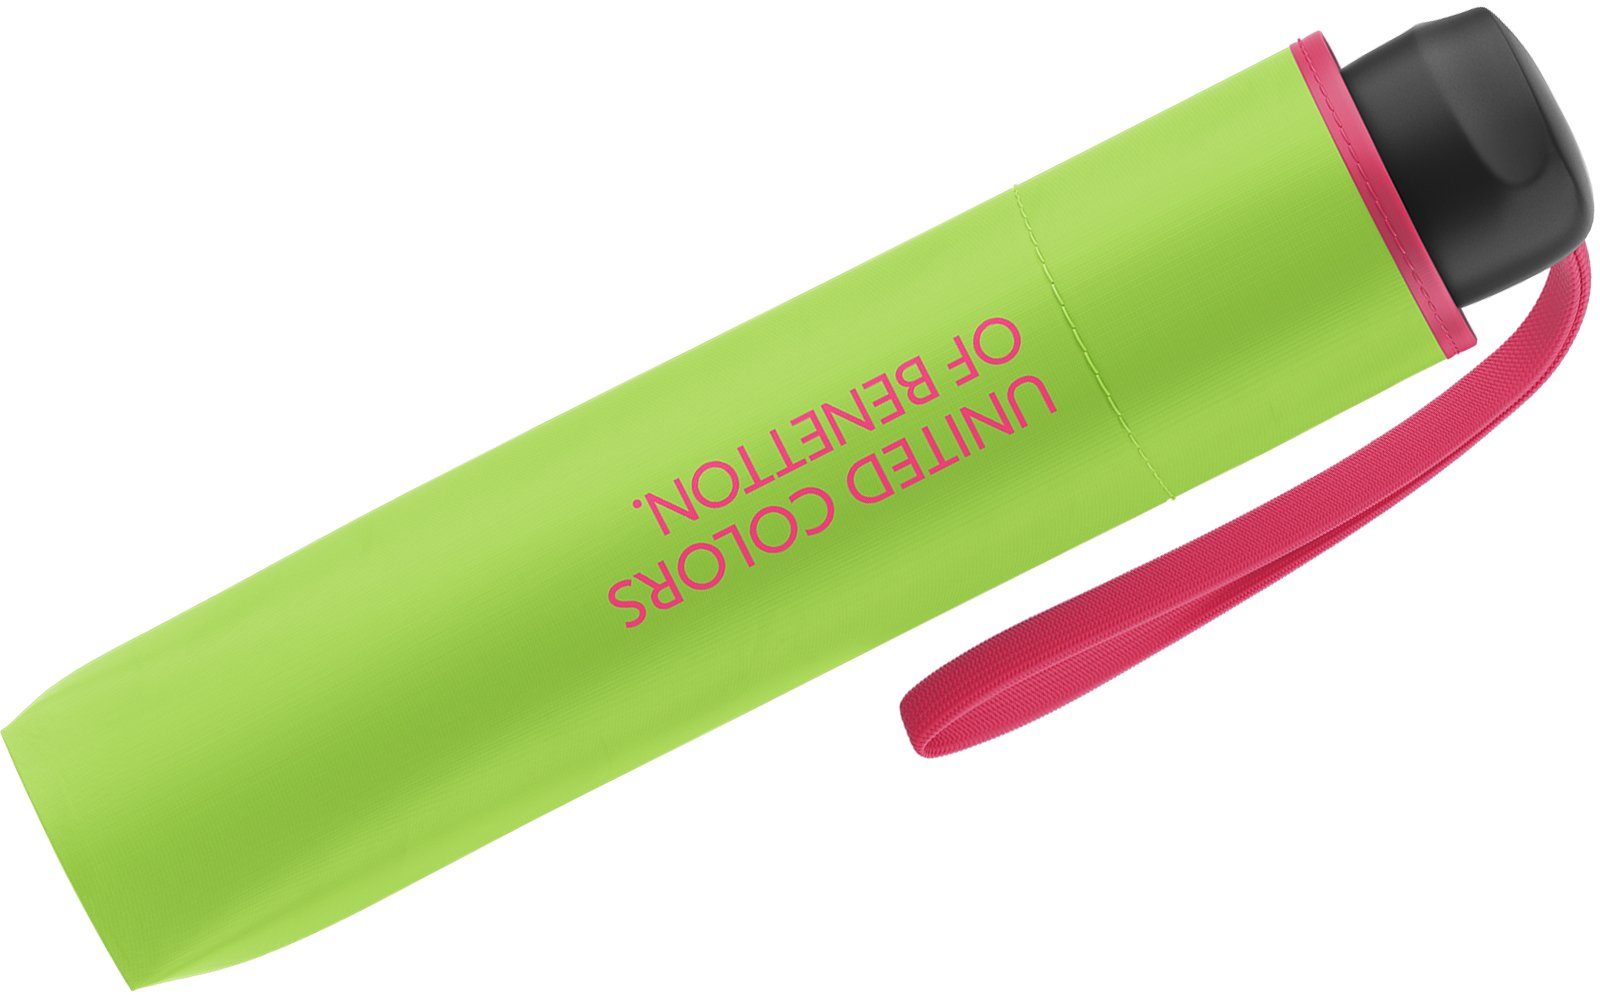 mit United Saum flash, kontrastreichem Super Mini Benetton Colors leuchtende 2023 - of green Taschenregenschirm grün-pink Modefarben HW